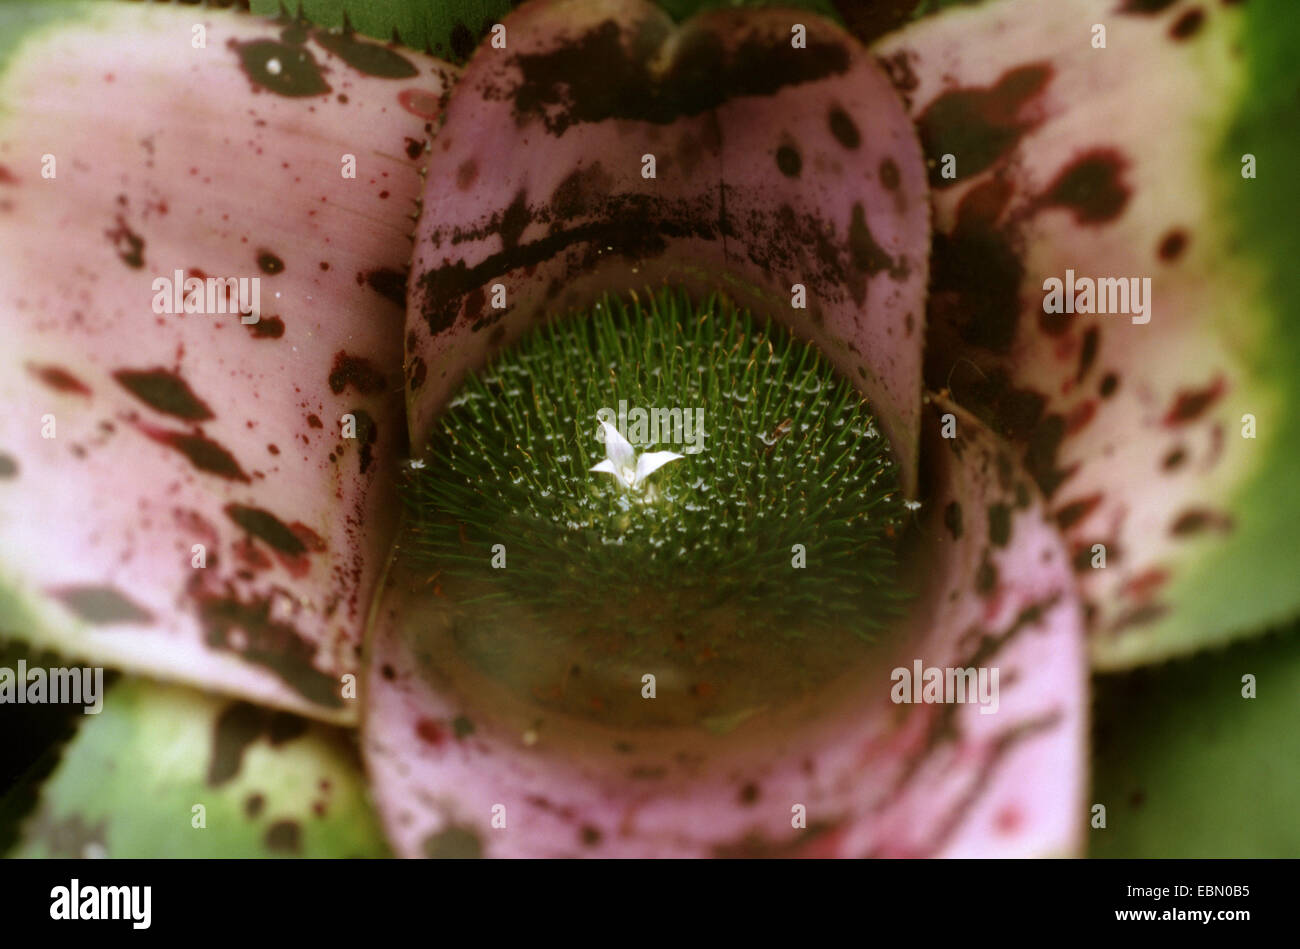 Neoregelia (Neoregelia concentrica), with flower Stock Photo